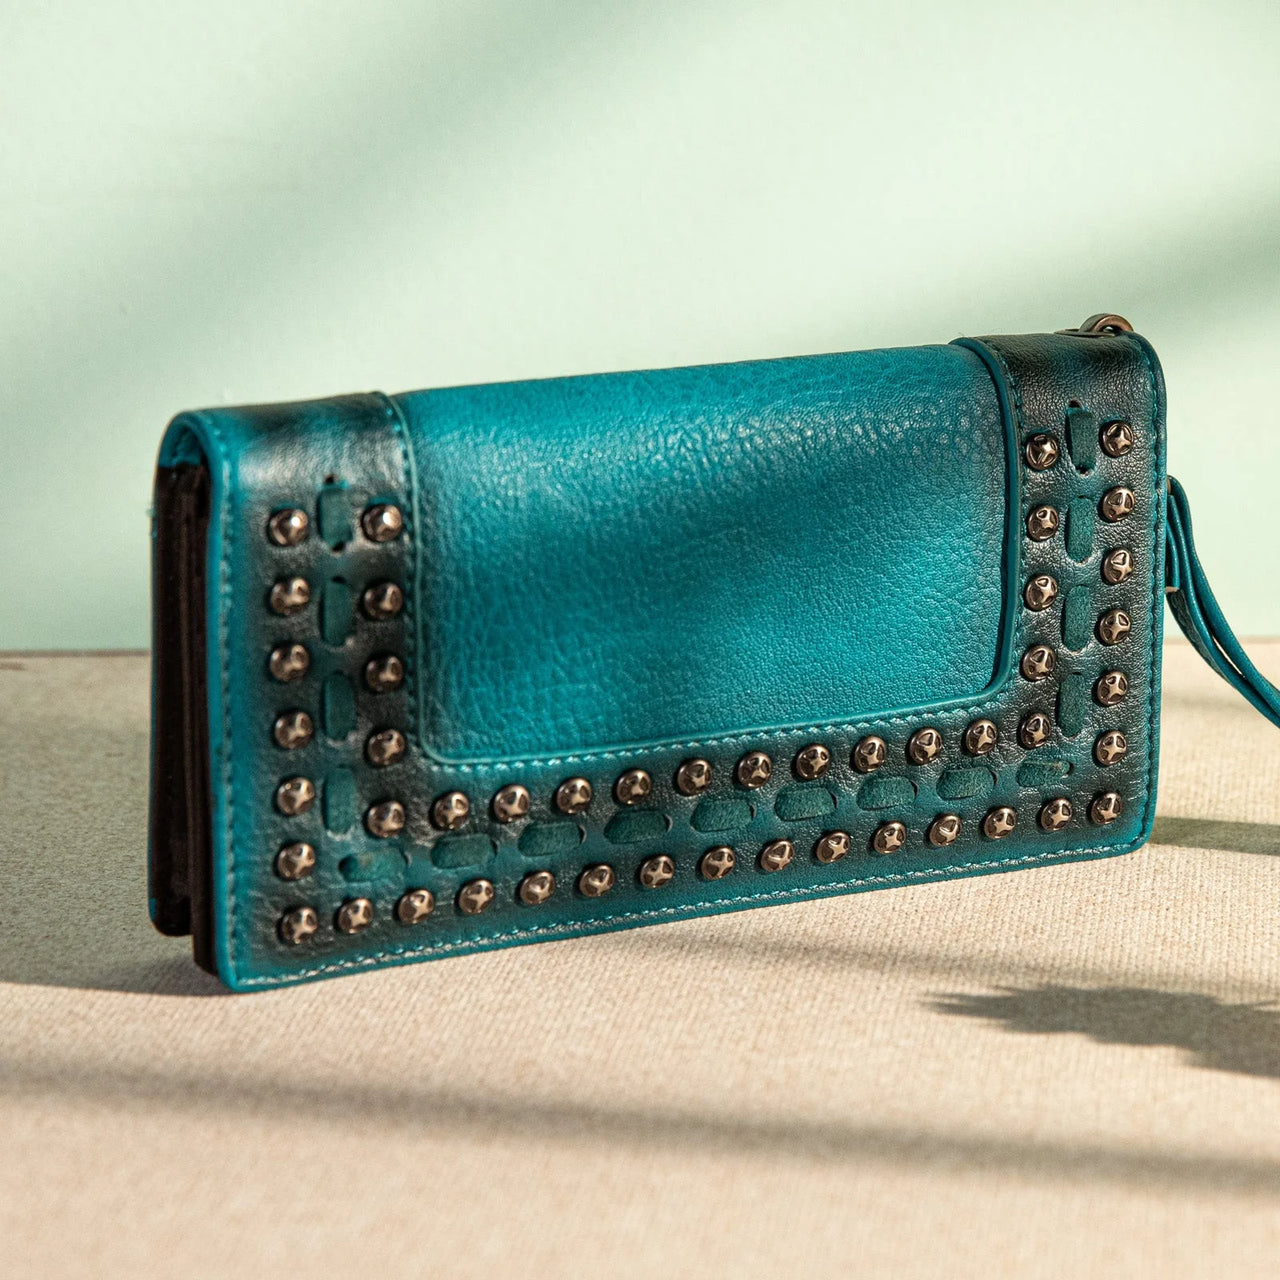 Wrangler Women's Studded Wallet - Turquoise